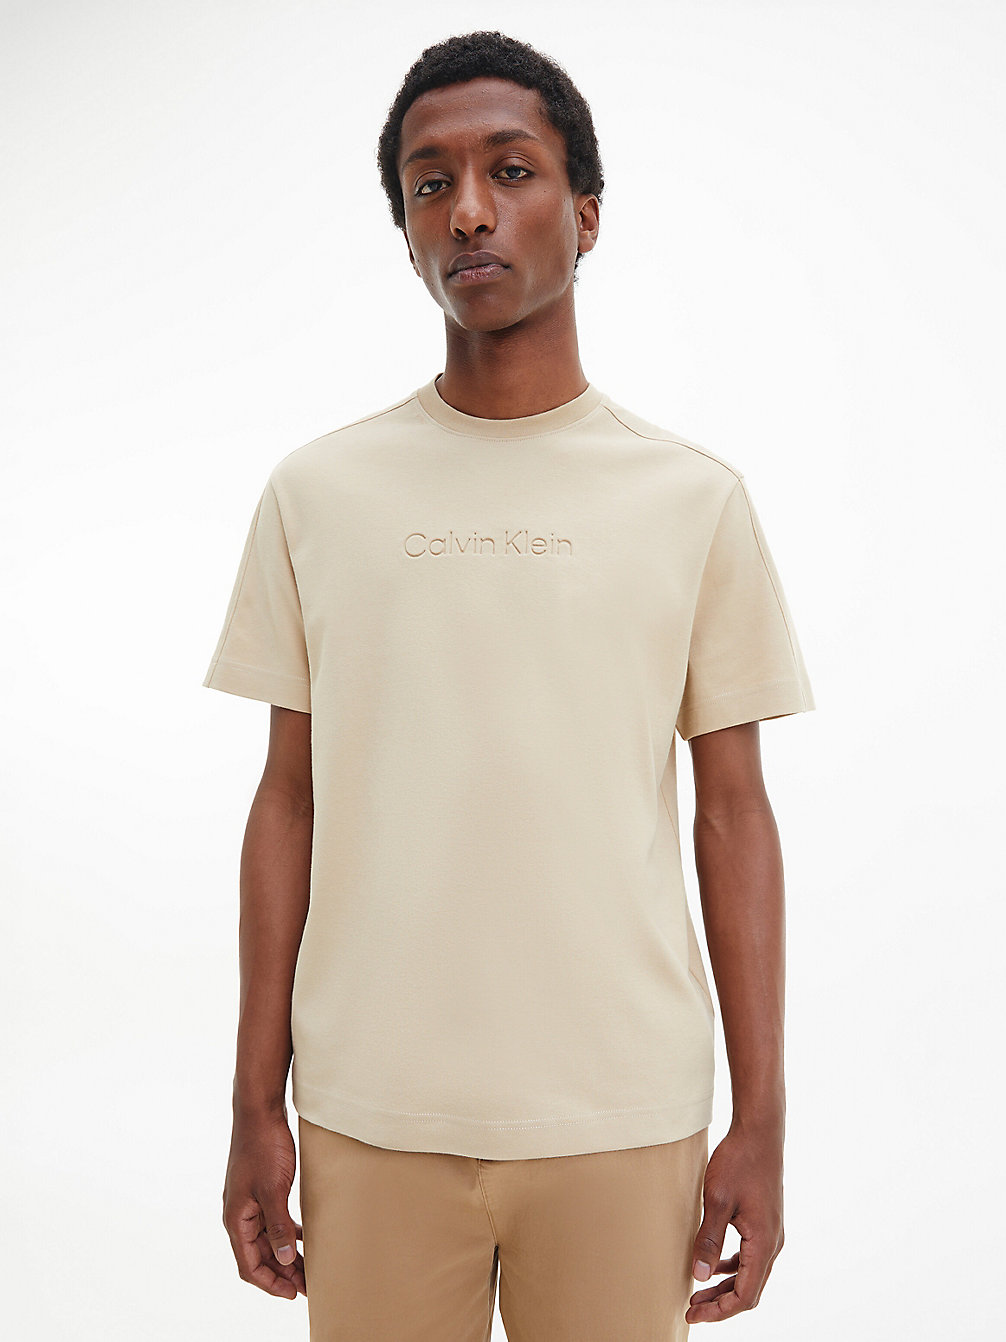 TRAVERTINE > Luźny T-Shirt Z Bawełny Organicznej > undefined Mężczyźni - Calvin Klein